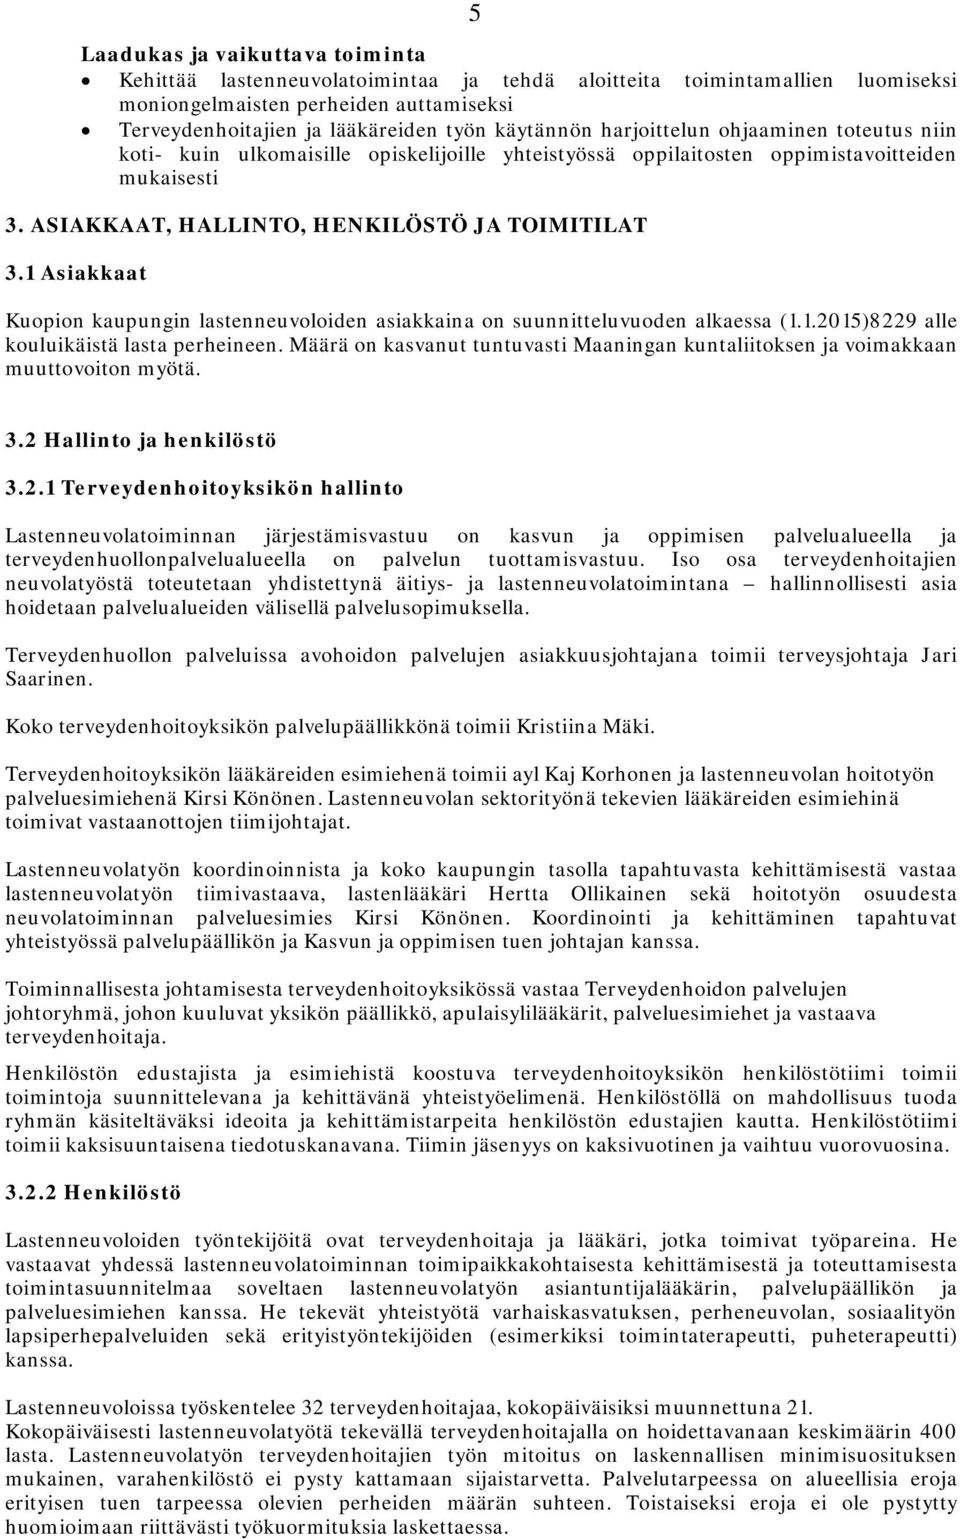 1 Asiaaat Kuopion kaupungin lastenneuvoloiden asiaaina on suunnitteluvuoden alkaessa (1.1.2015)8229 alle kouluikäistä lasta perheineen.